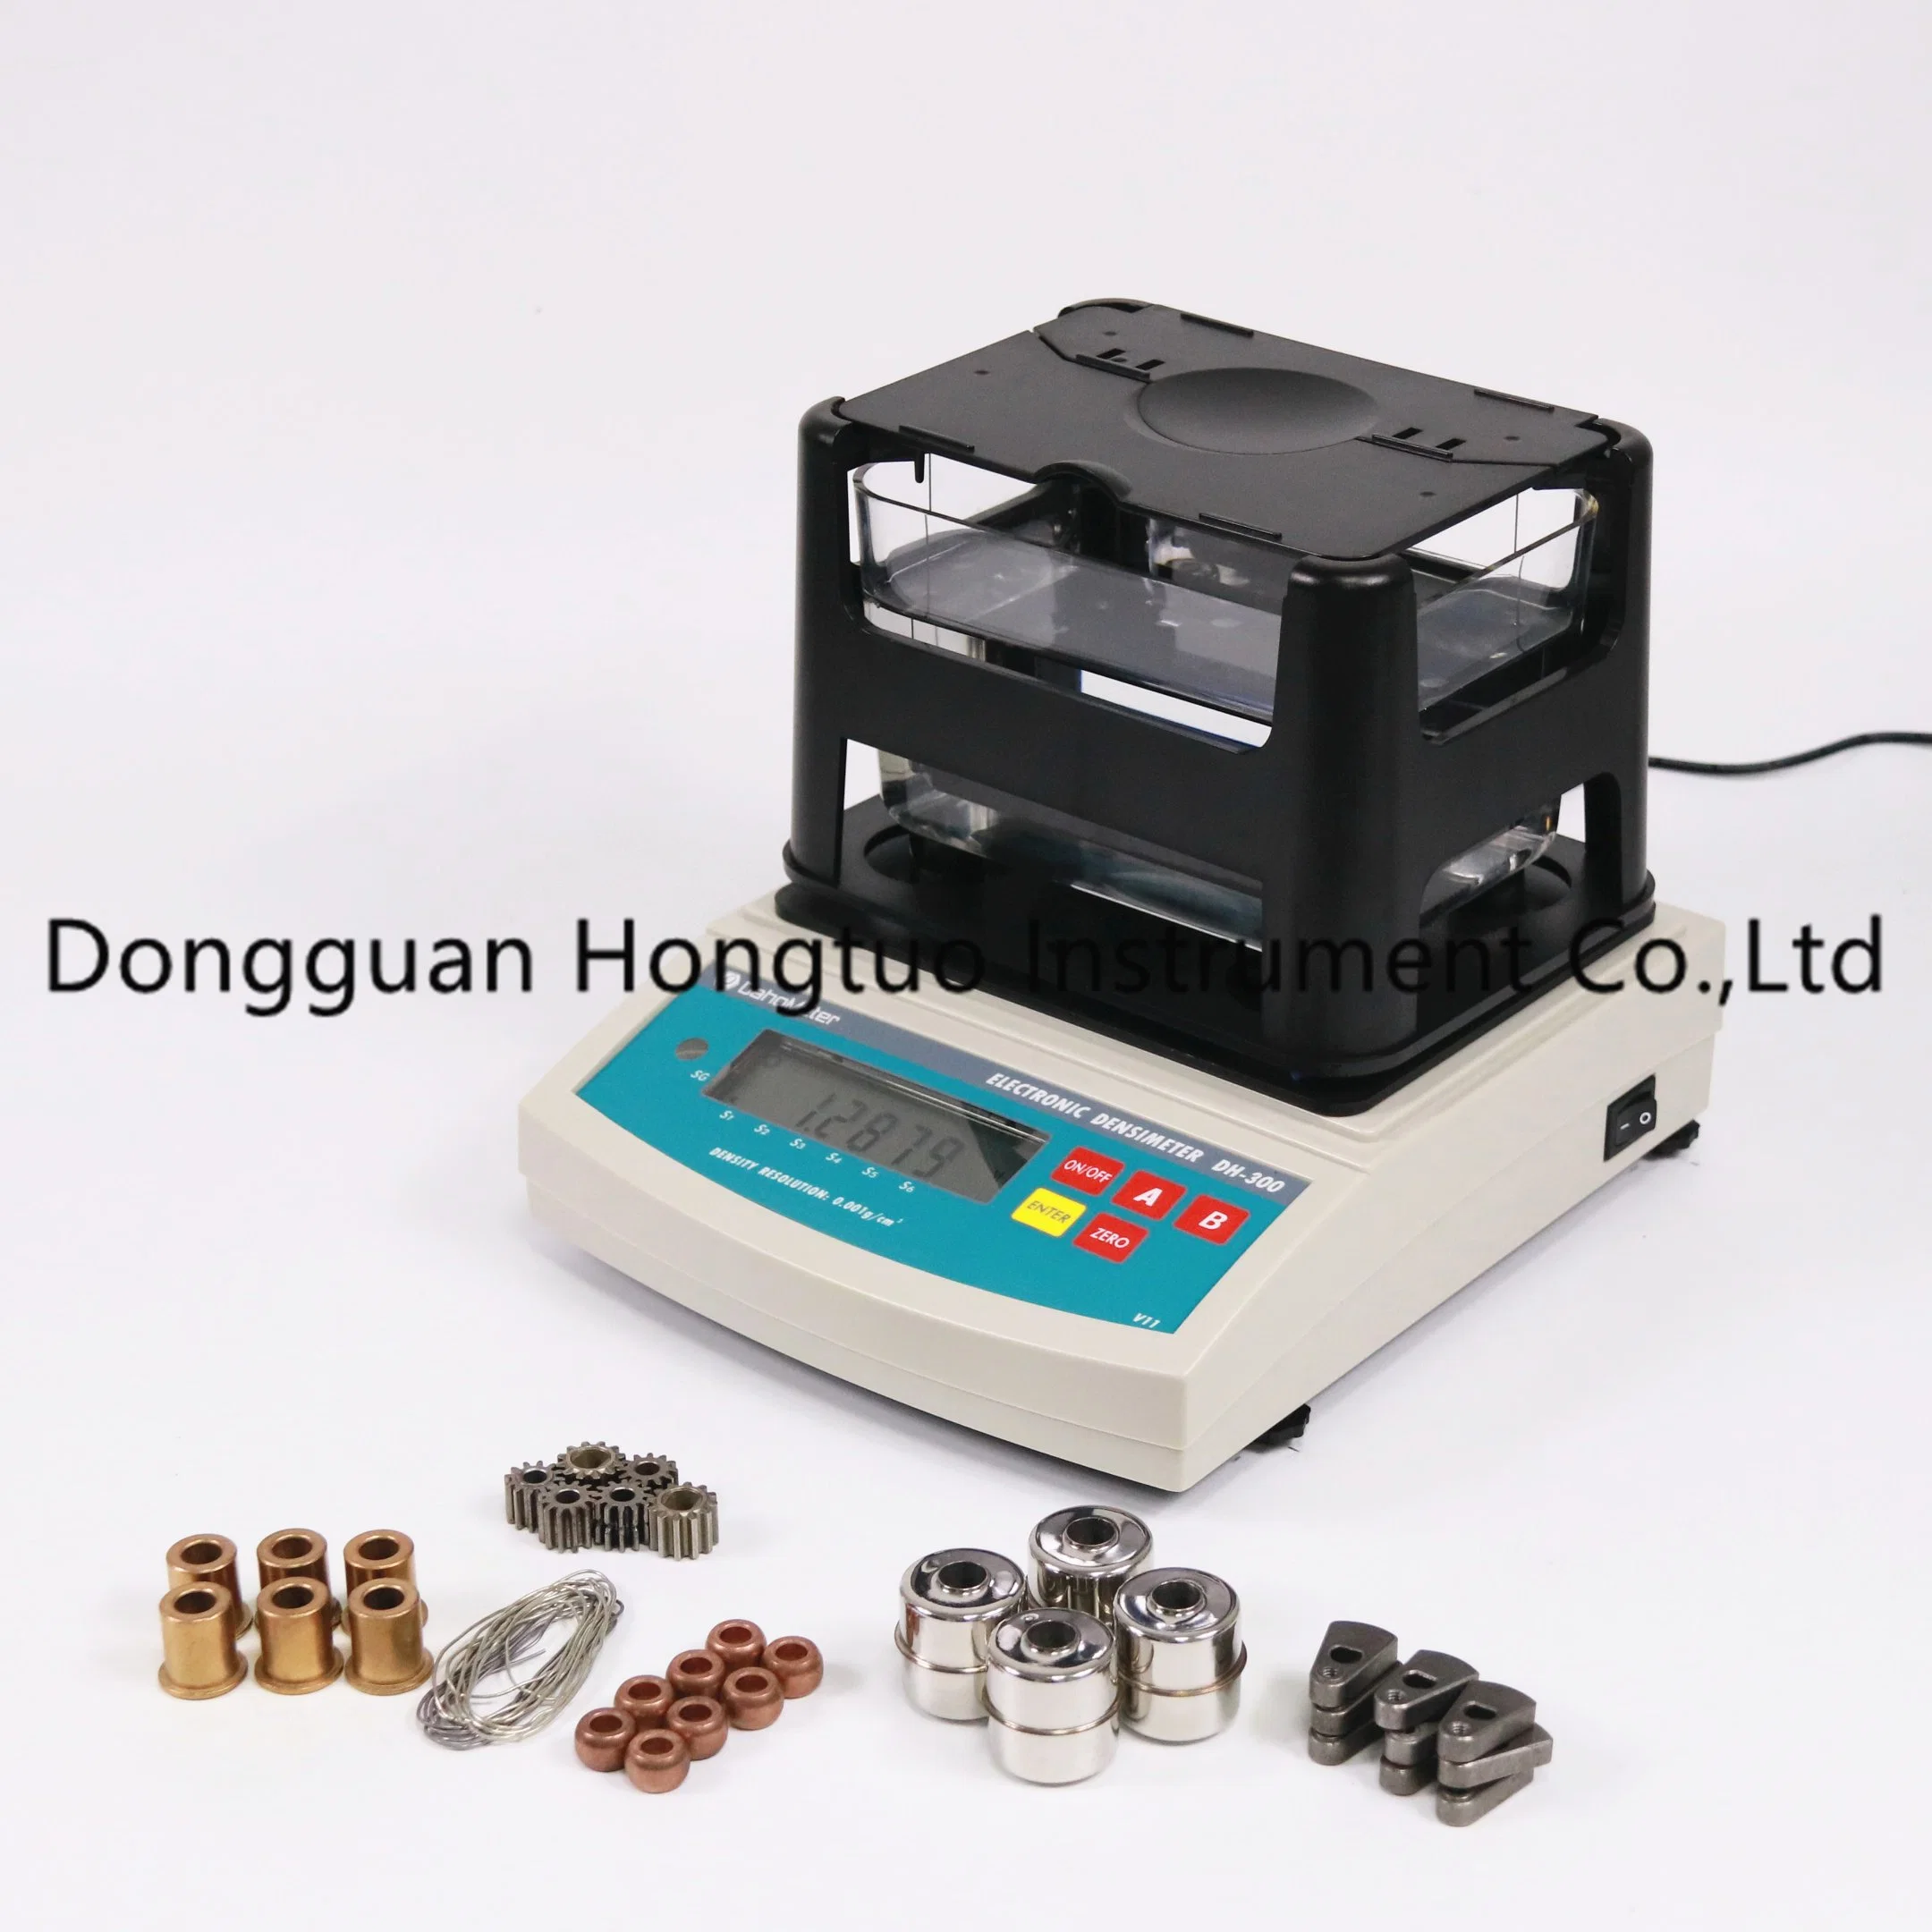 DH-1200 fabricante líder profissional Densímetro de densidade Digital de sólidos Eletrônicos